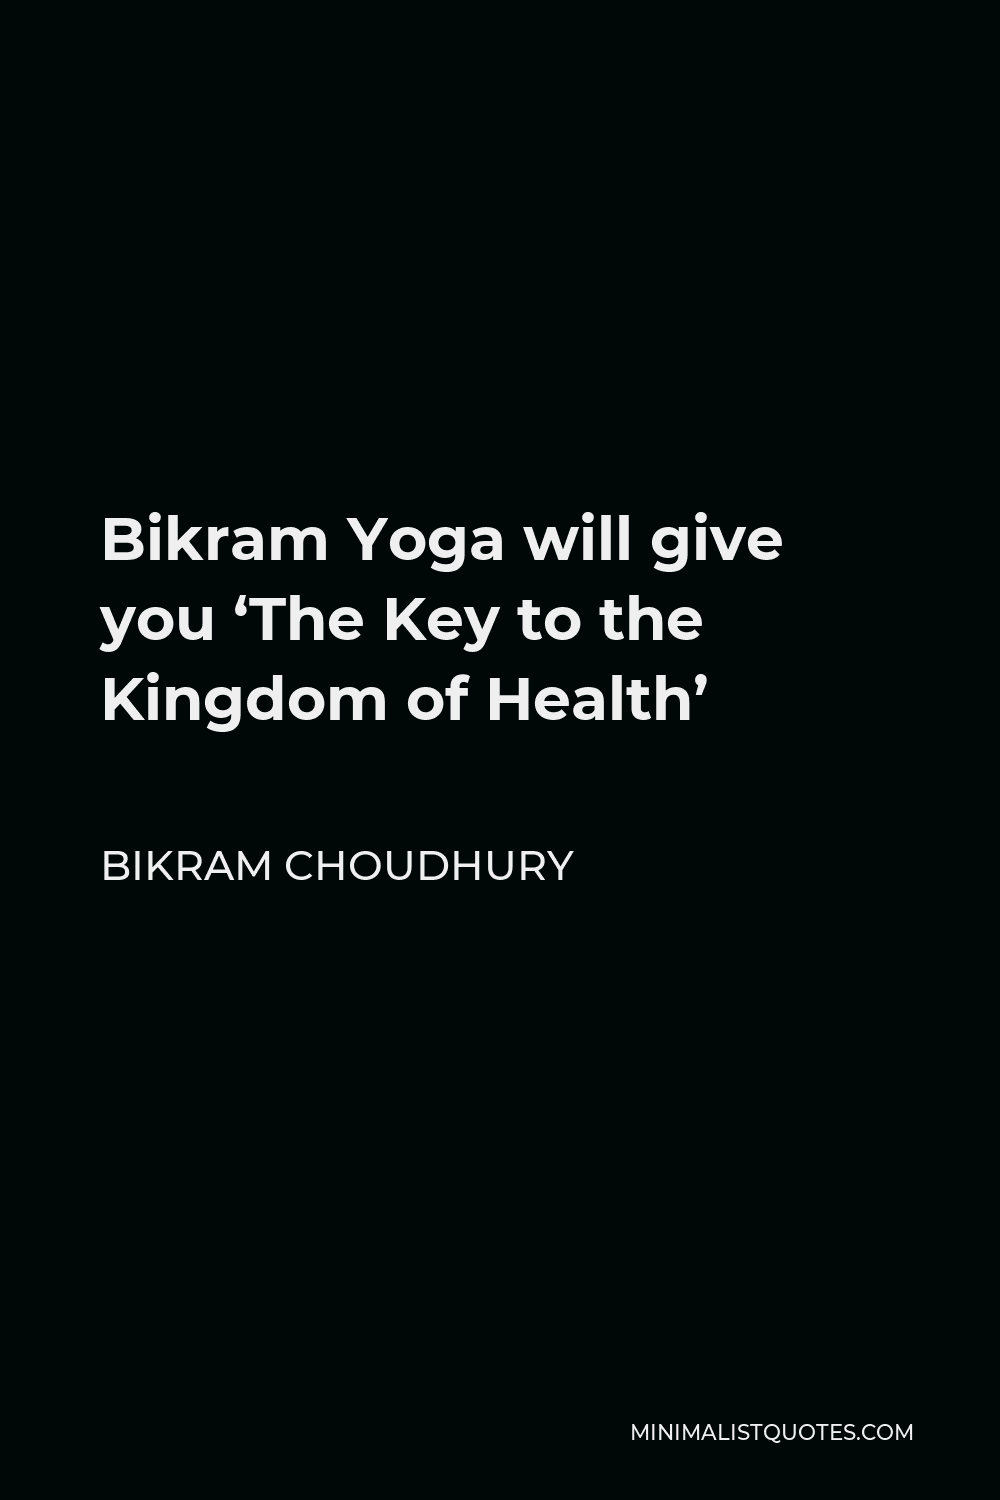 Bikram Choudhury Quote - Bikram Yoga will give you ‘The Key to the Kingdom of Health’